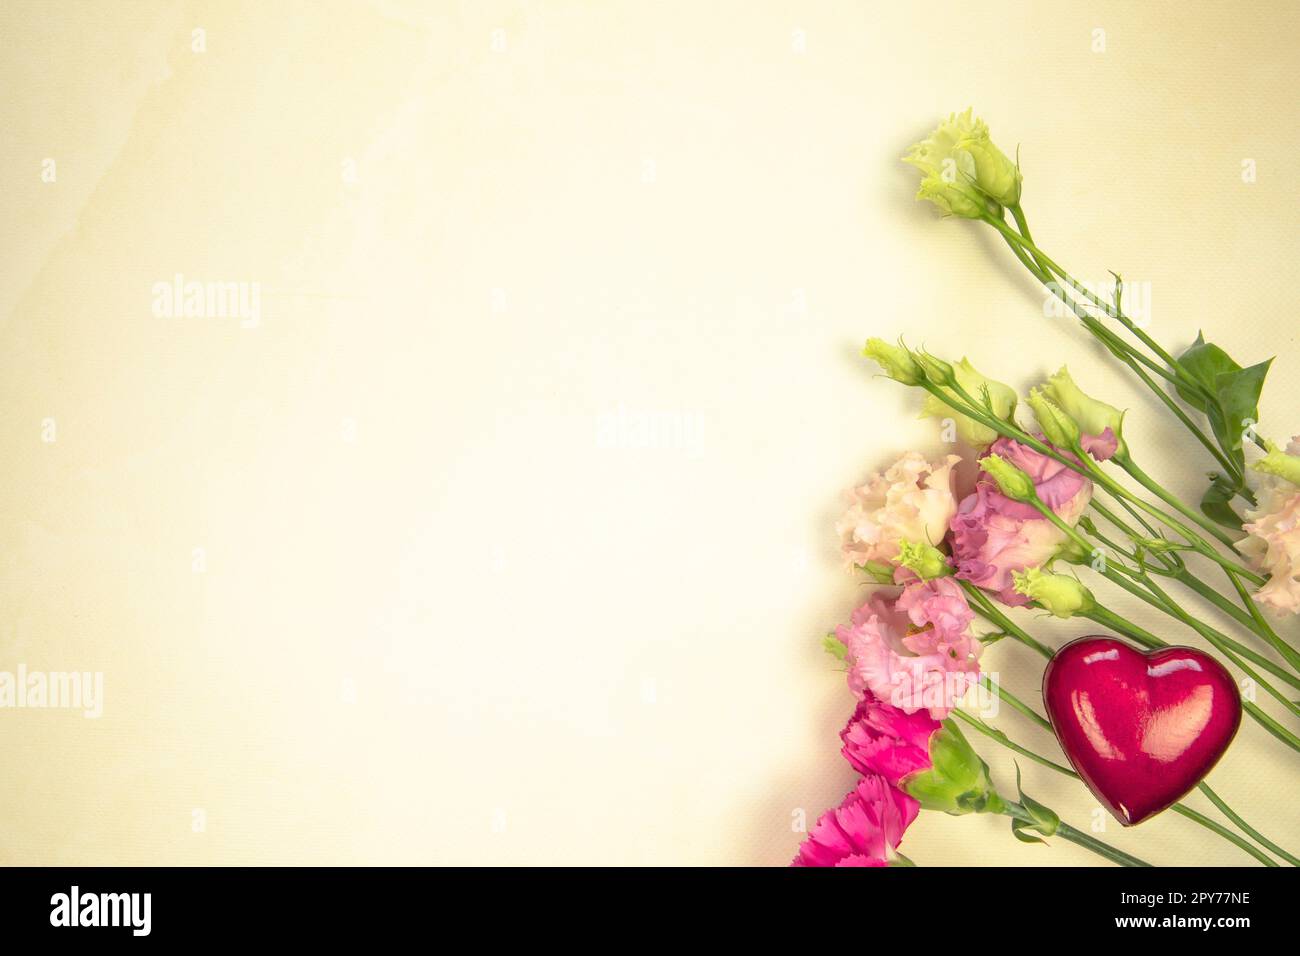 Blumendesign aus verschiedenen frischen Frühlingsblumen auf gelbem Hintergrund. Schöne Lichtreflexionen. Draufsicht. wildblumen flach liegend Kopierraum, Frühling, Sommer Naturkonzept Stockfoto